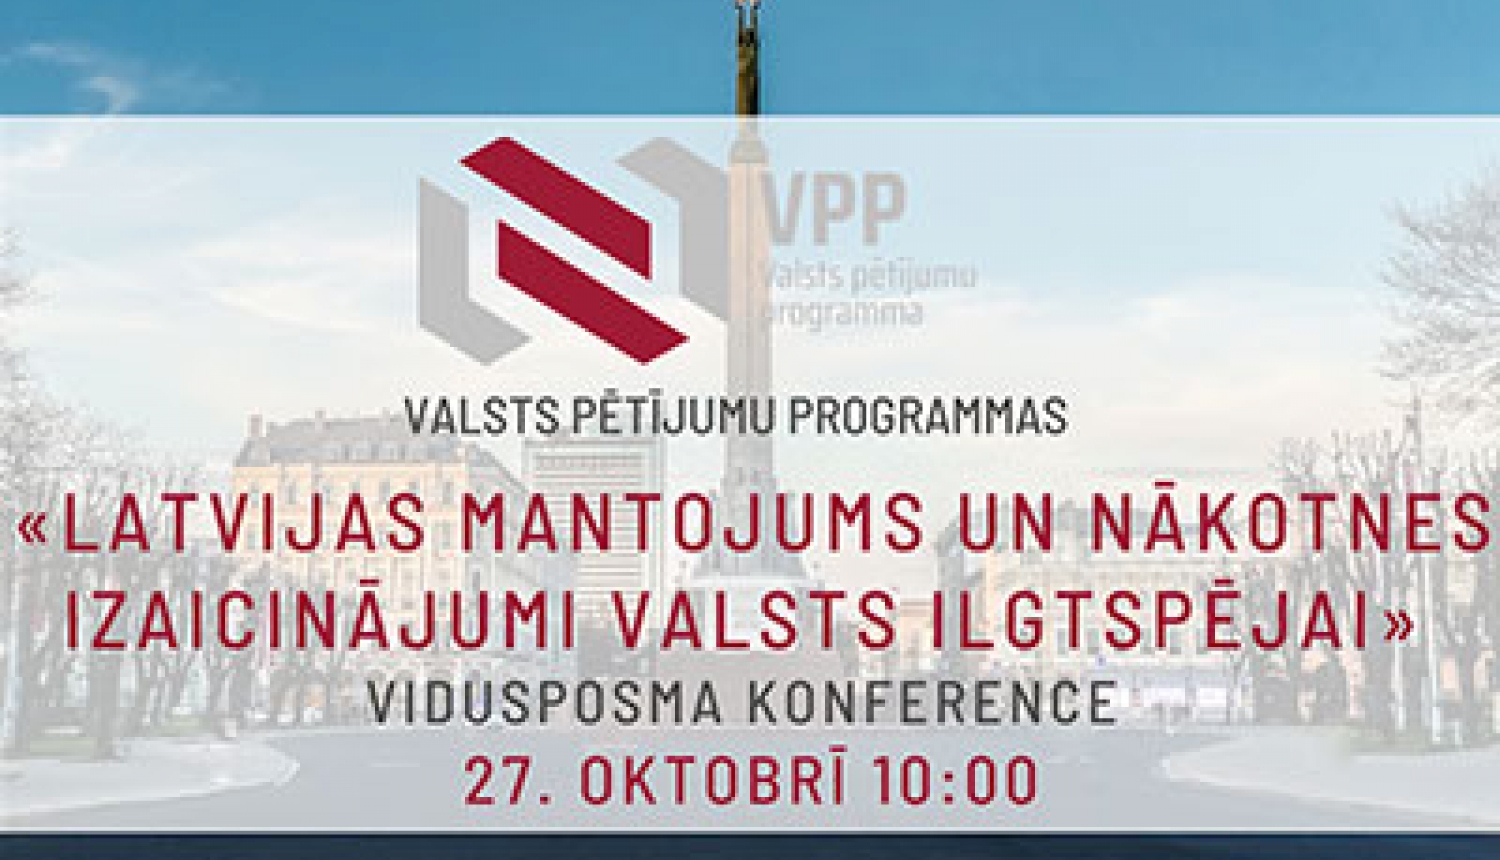 Konference “Latvijas mantojums un nākotnes izaicinājumi valsts ilgtspējai” 27. oktobrī